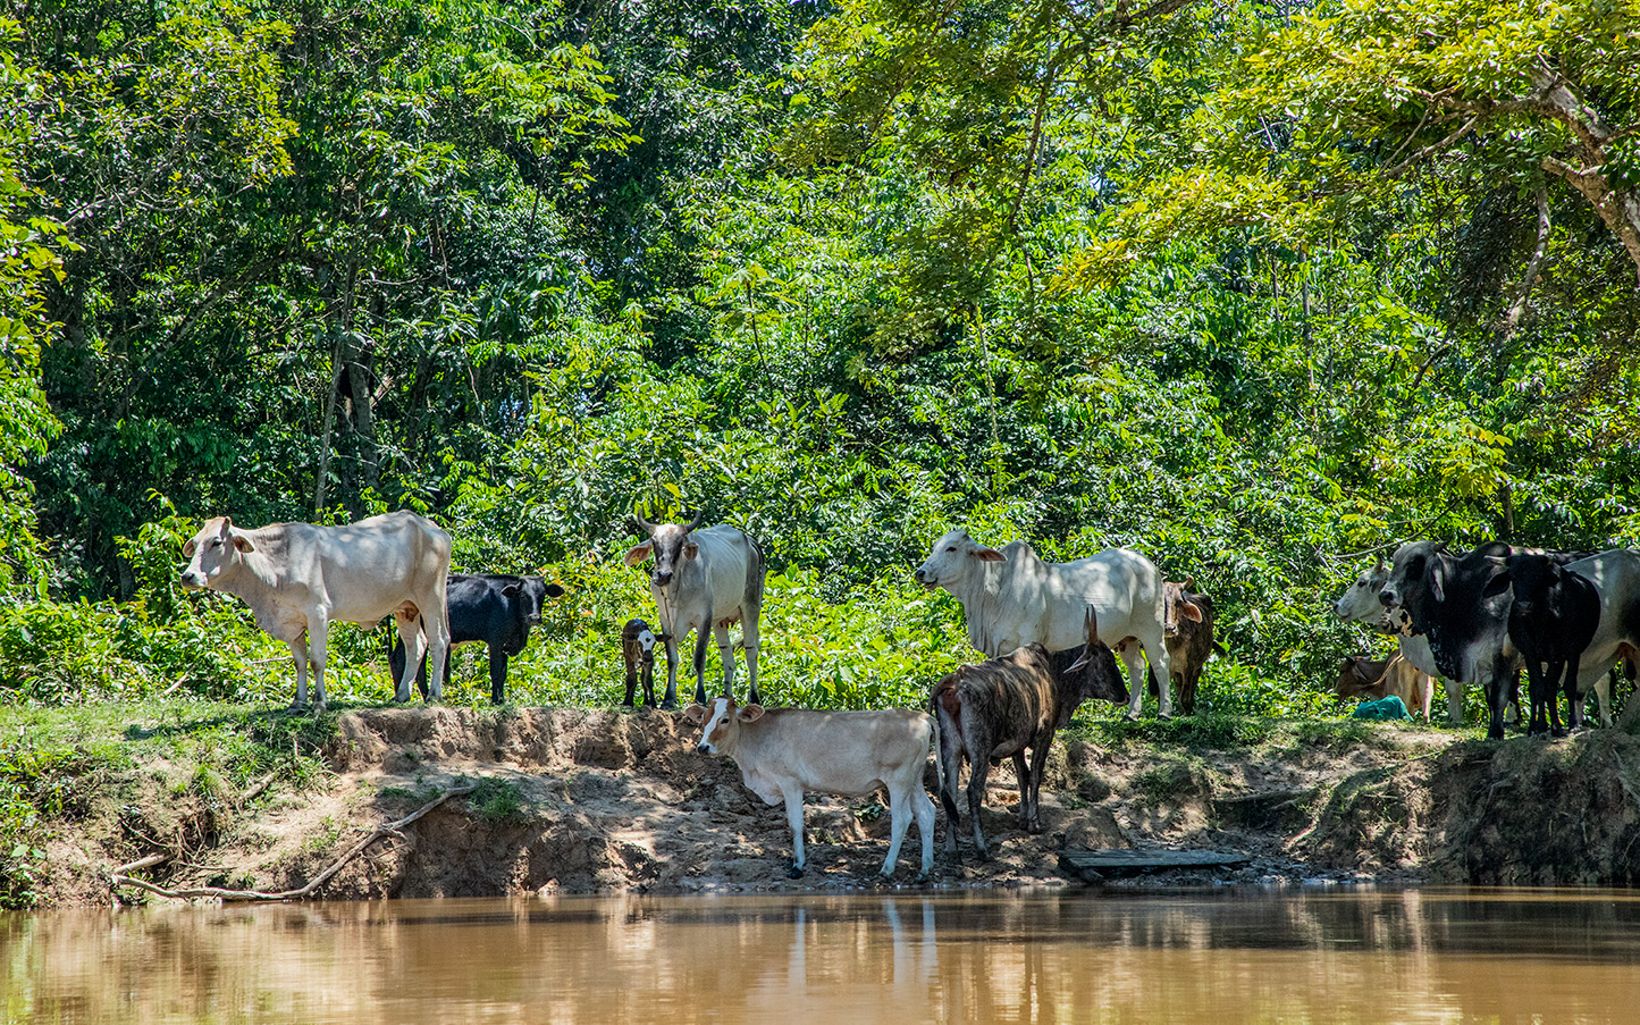 La ganadería tradicional transforma bosque para pastorear. No considera los beneficios de la naturaleza para su finca y es un problema estructural ligado a diversos factores.